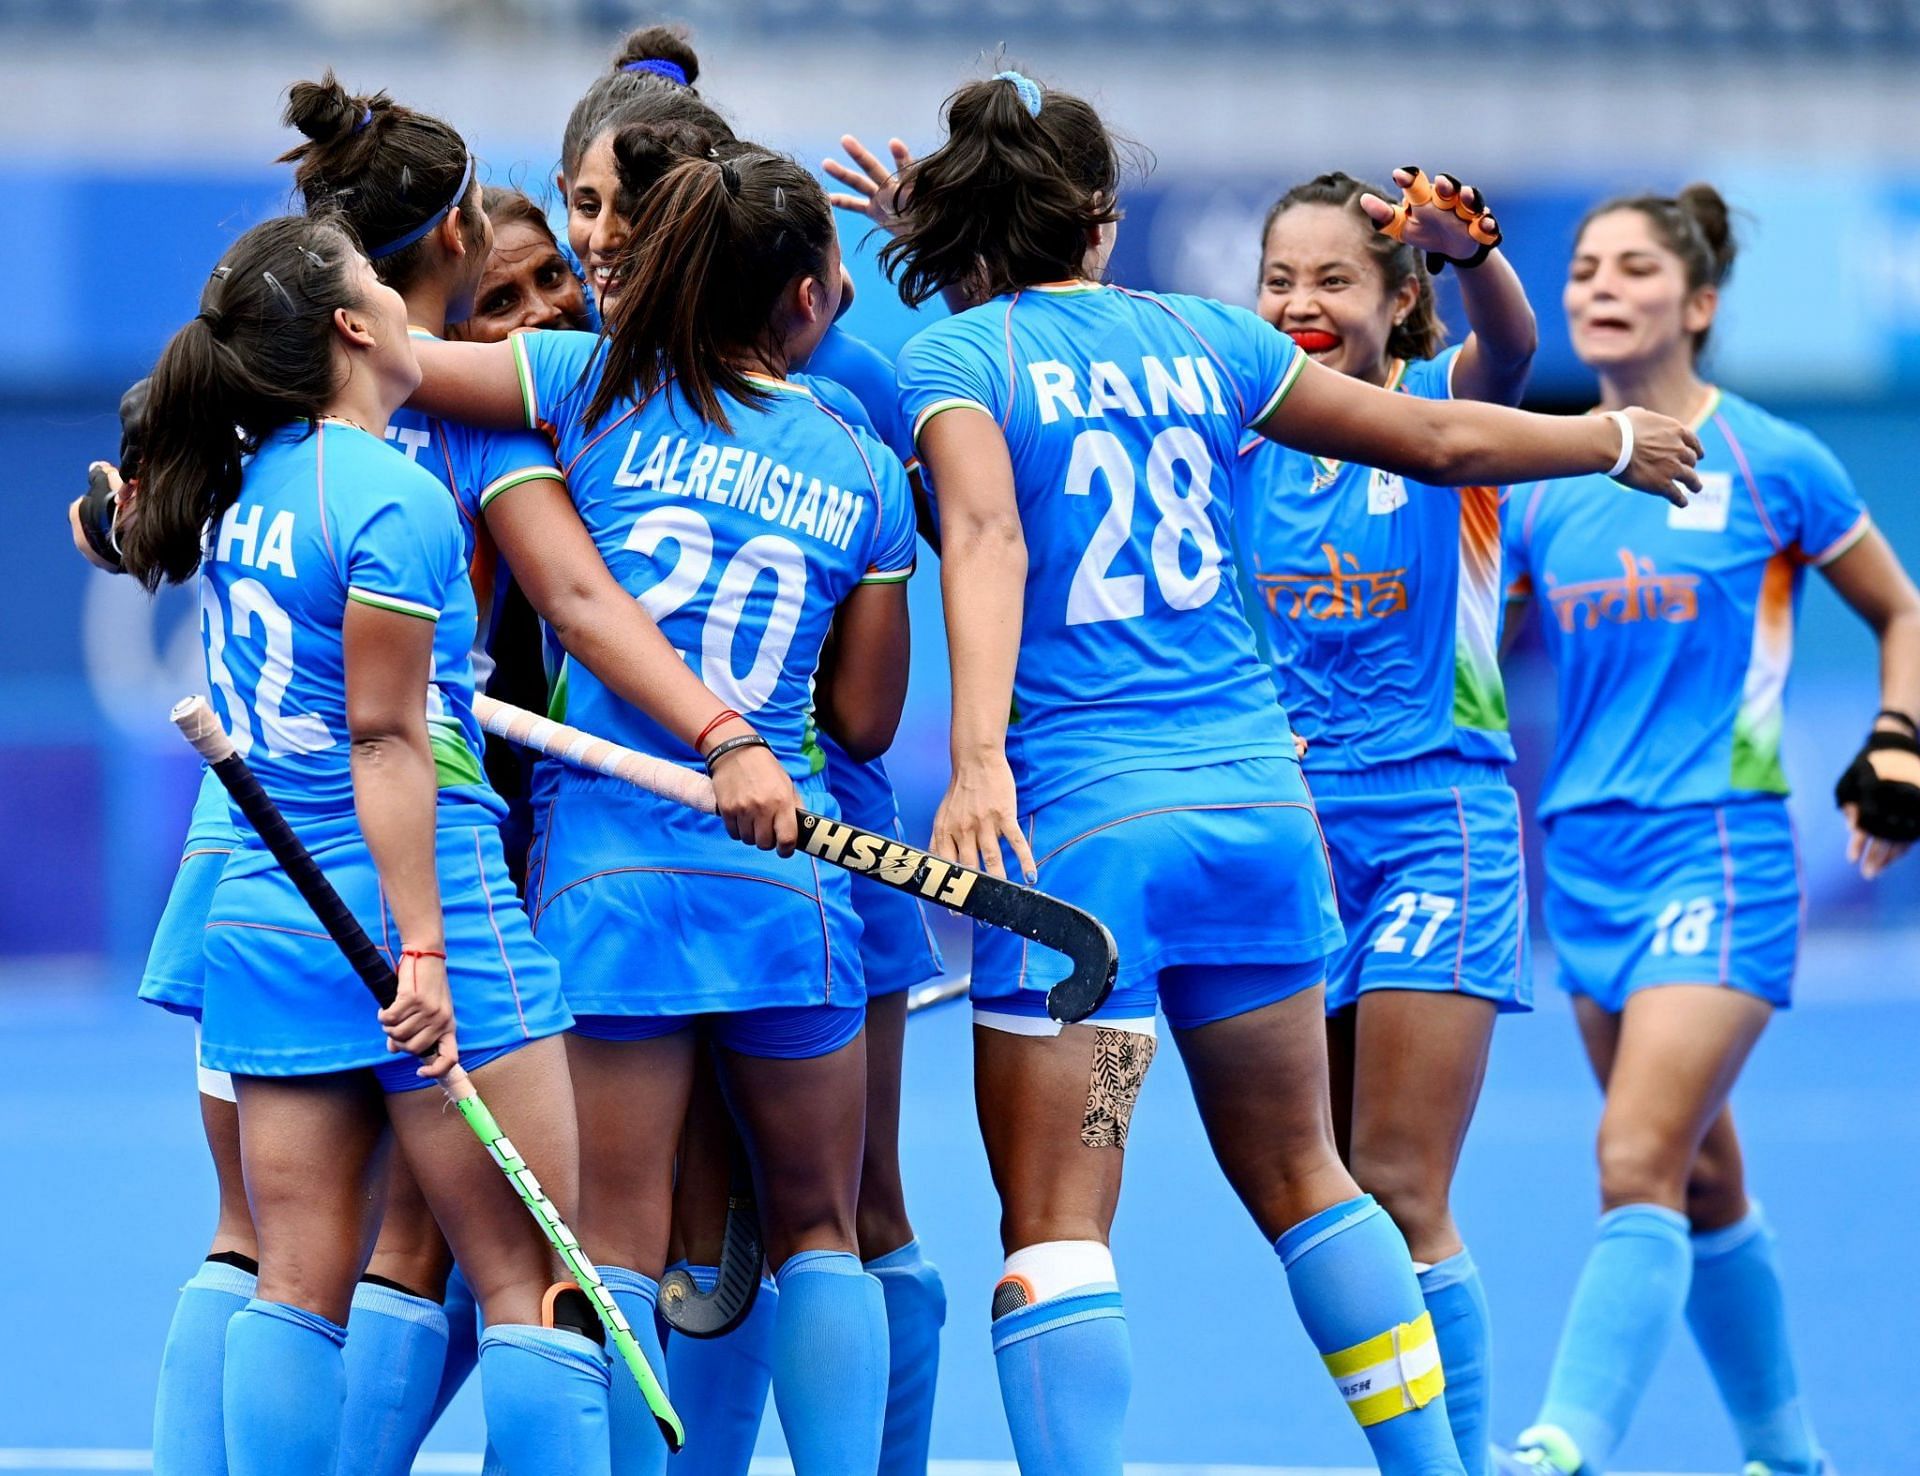 भारतीय महिला टीम ने 4 मैचों की सीरीज में 2-0 की बढ़त ले ली है।